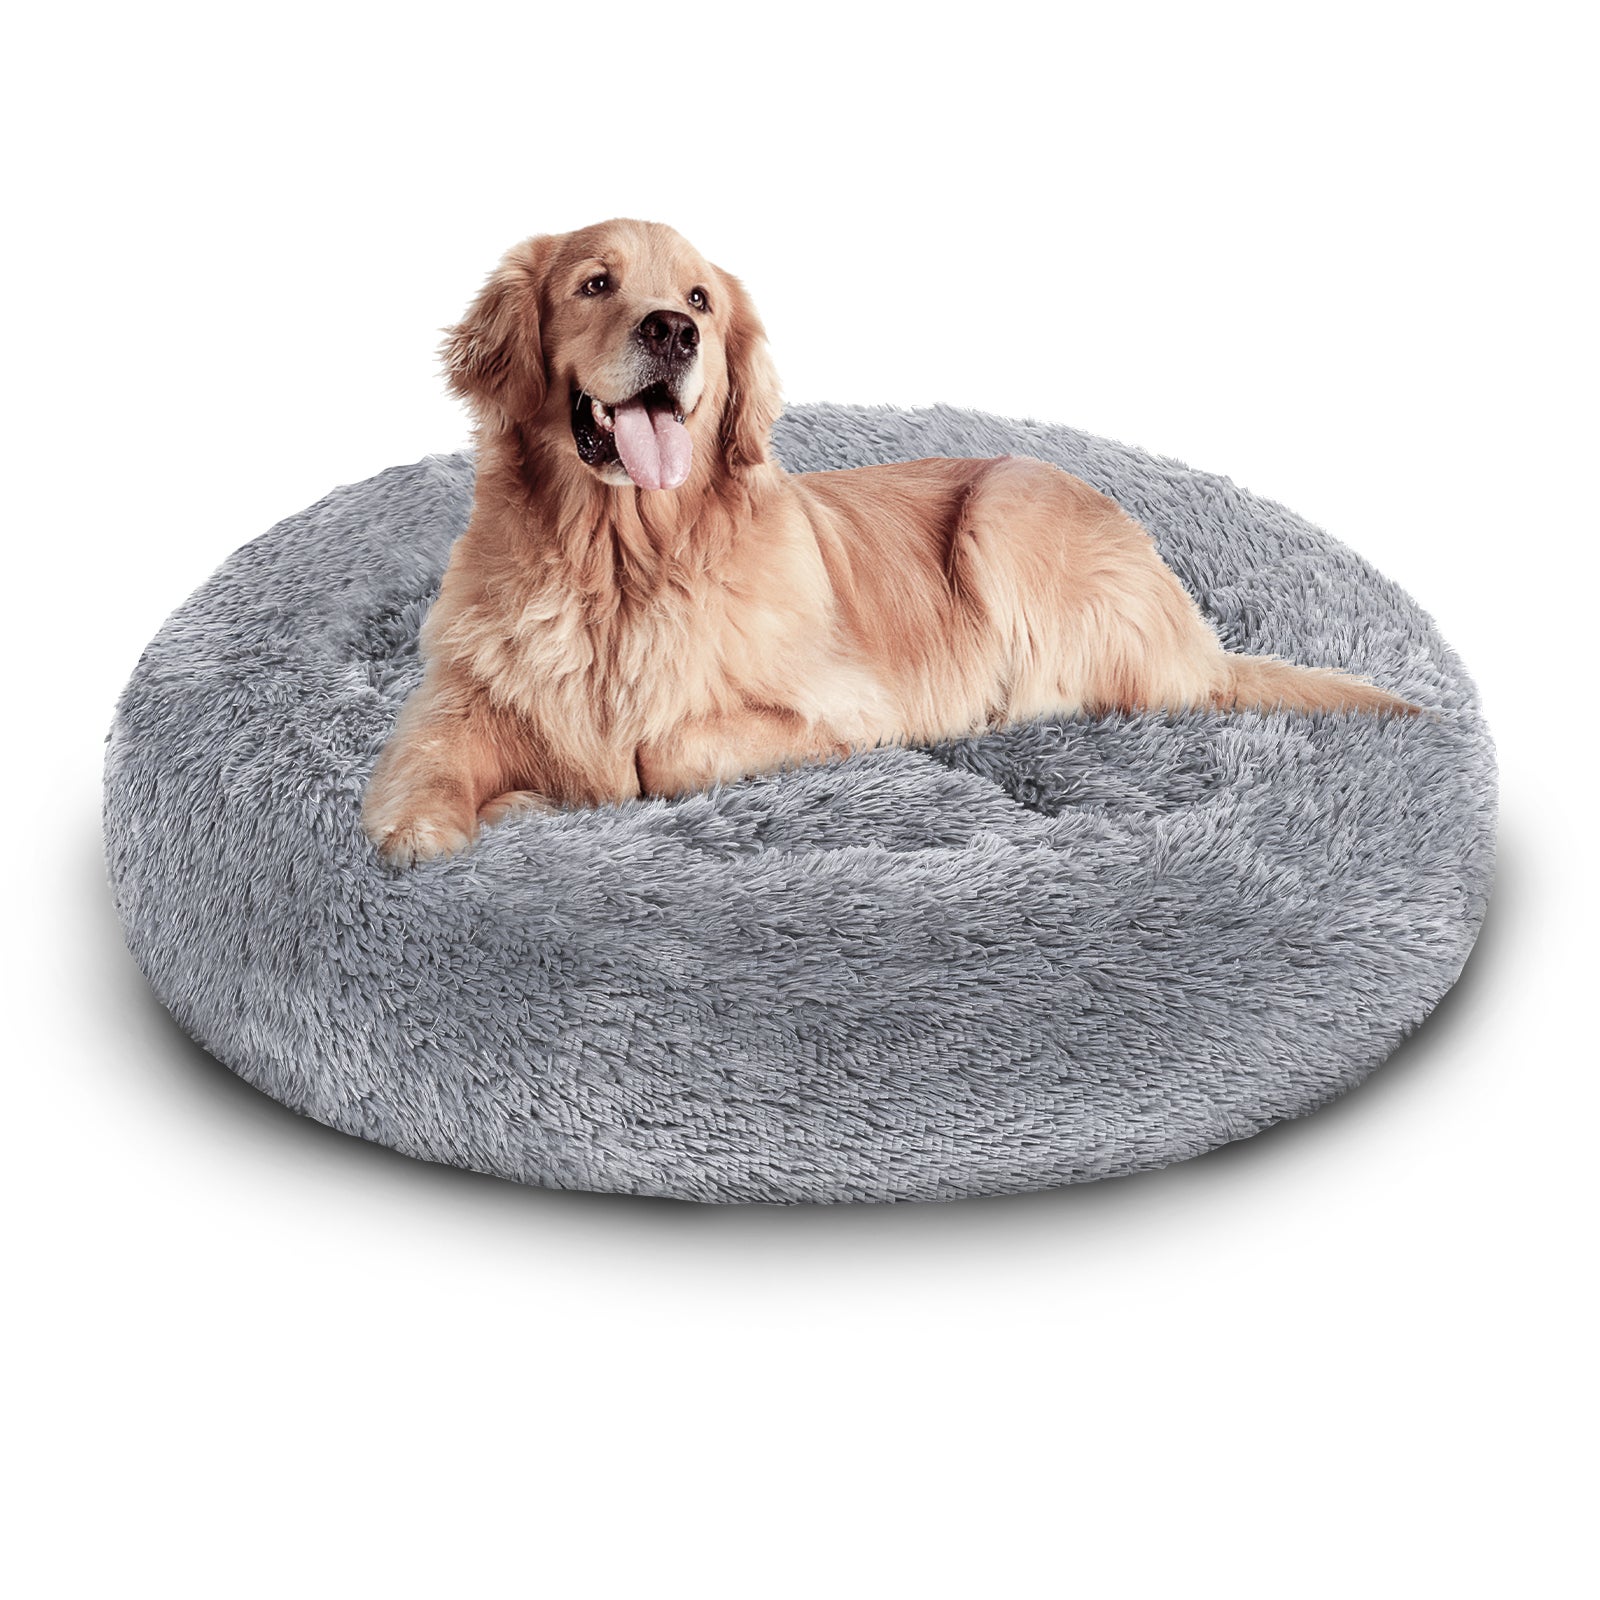 Camas de cama para perros para animales de perro cama flexible para la cama cojín para dormir para un perro de lujo gris claro cm | Leroy Merlin